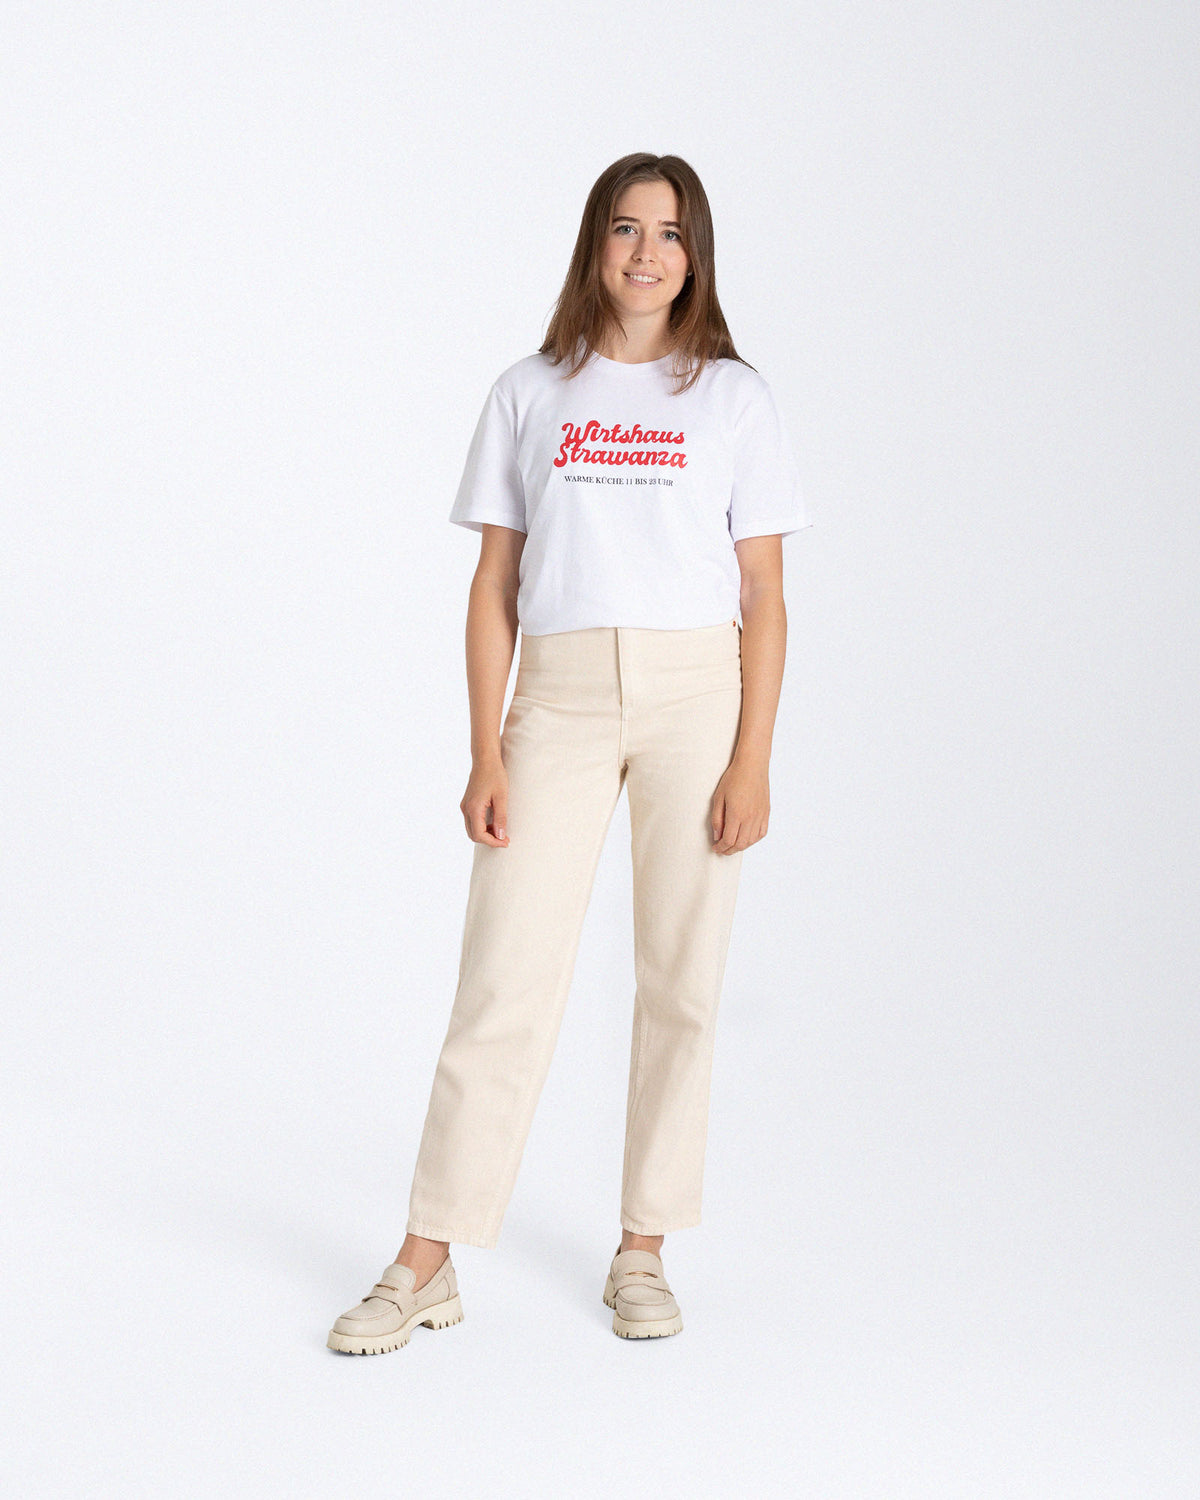 Ein weibliches Model trägt ein weißes T-Shirt mit einem zweiteiligen Print auf der Vorderseite, denn einmal ein orangener "Wirtshaus Strawanza" Schriftzug und zum anderen mit einem schwarzen "WARME KÜCHE 11 BIS 23 UHR" Schriftzug.